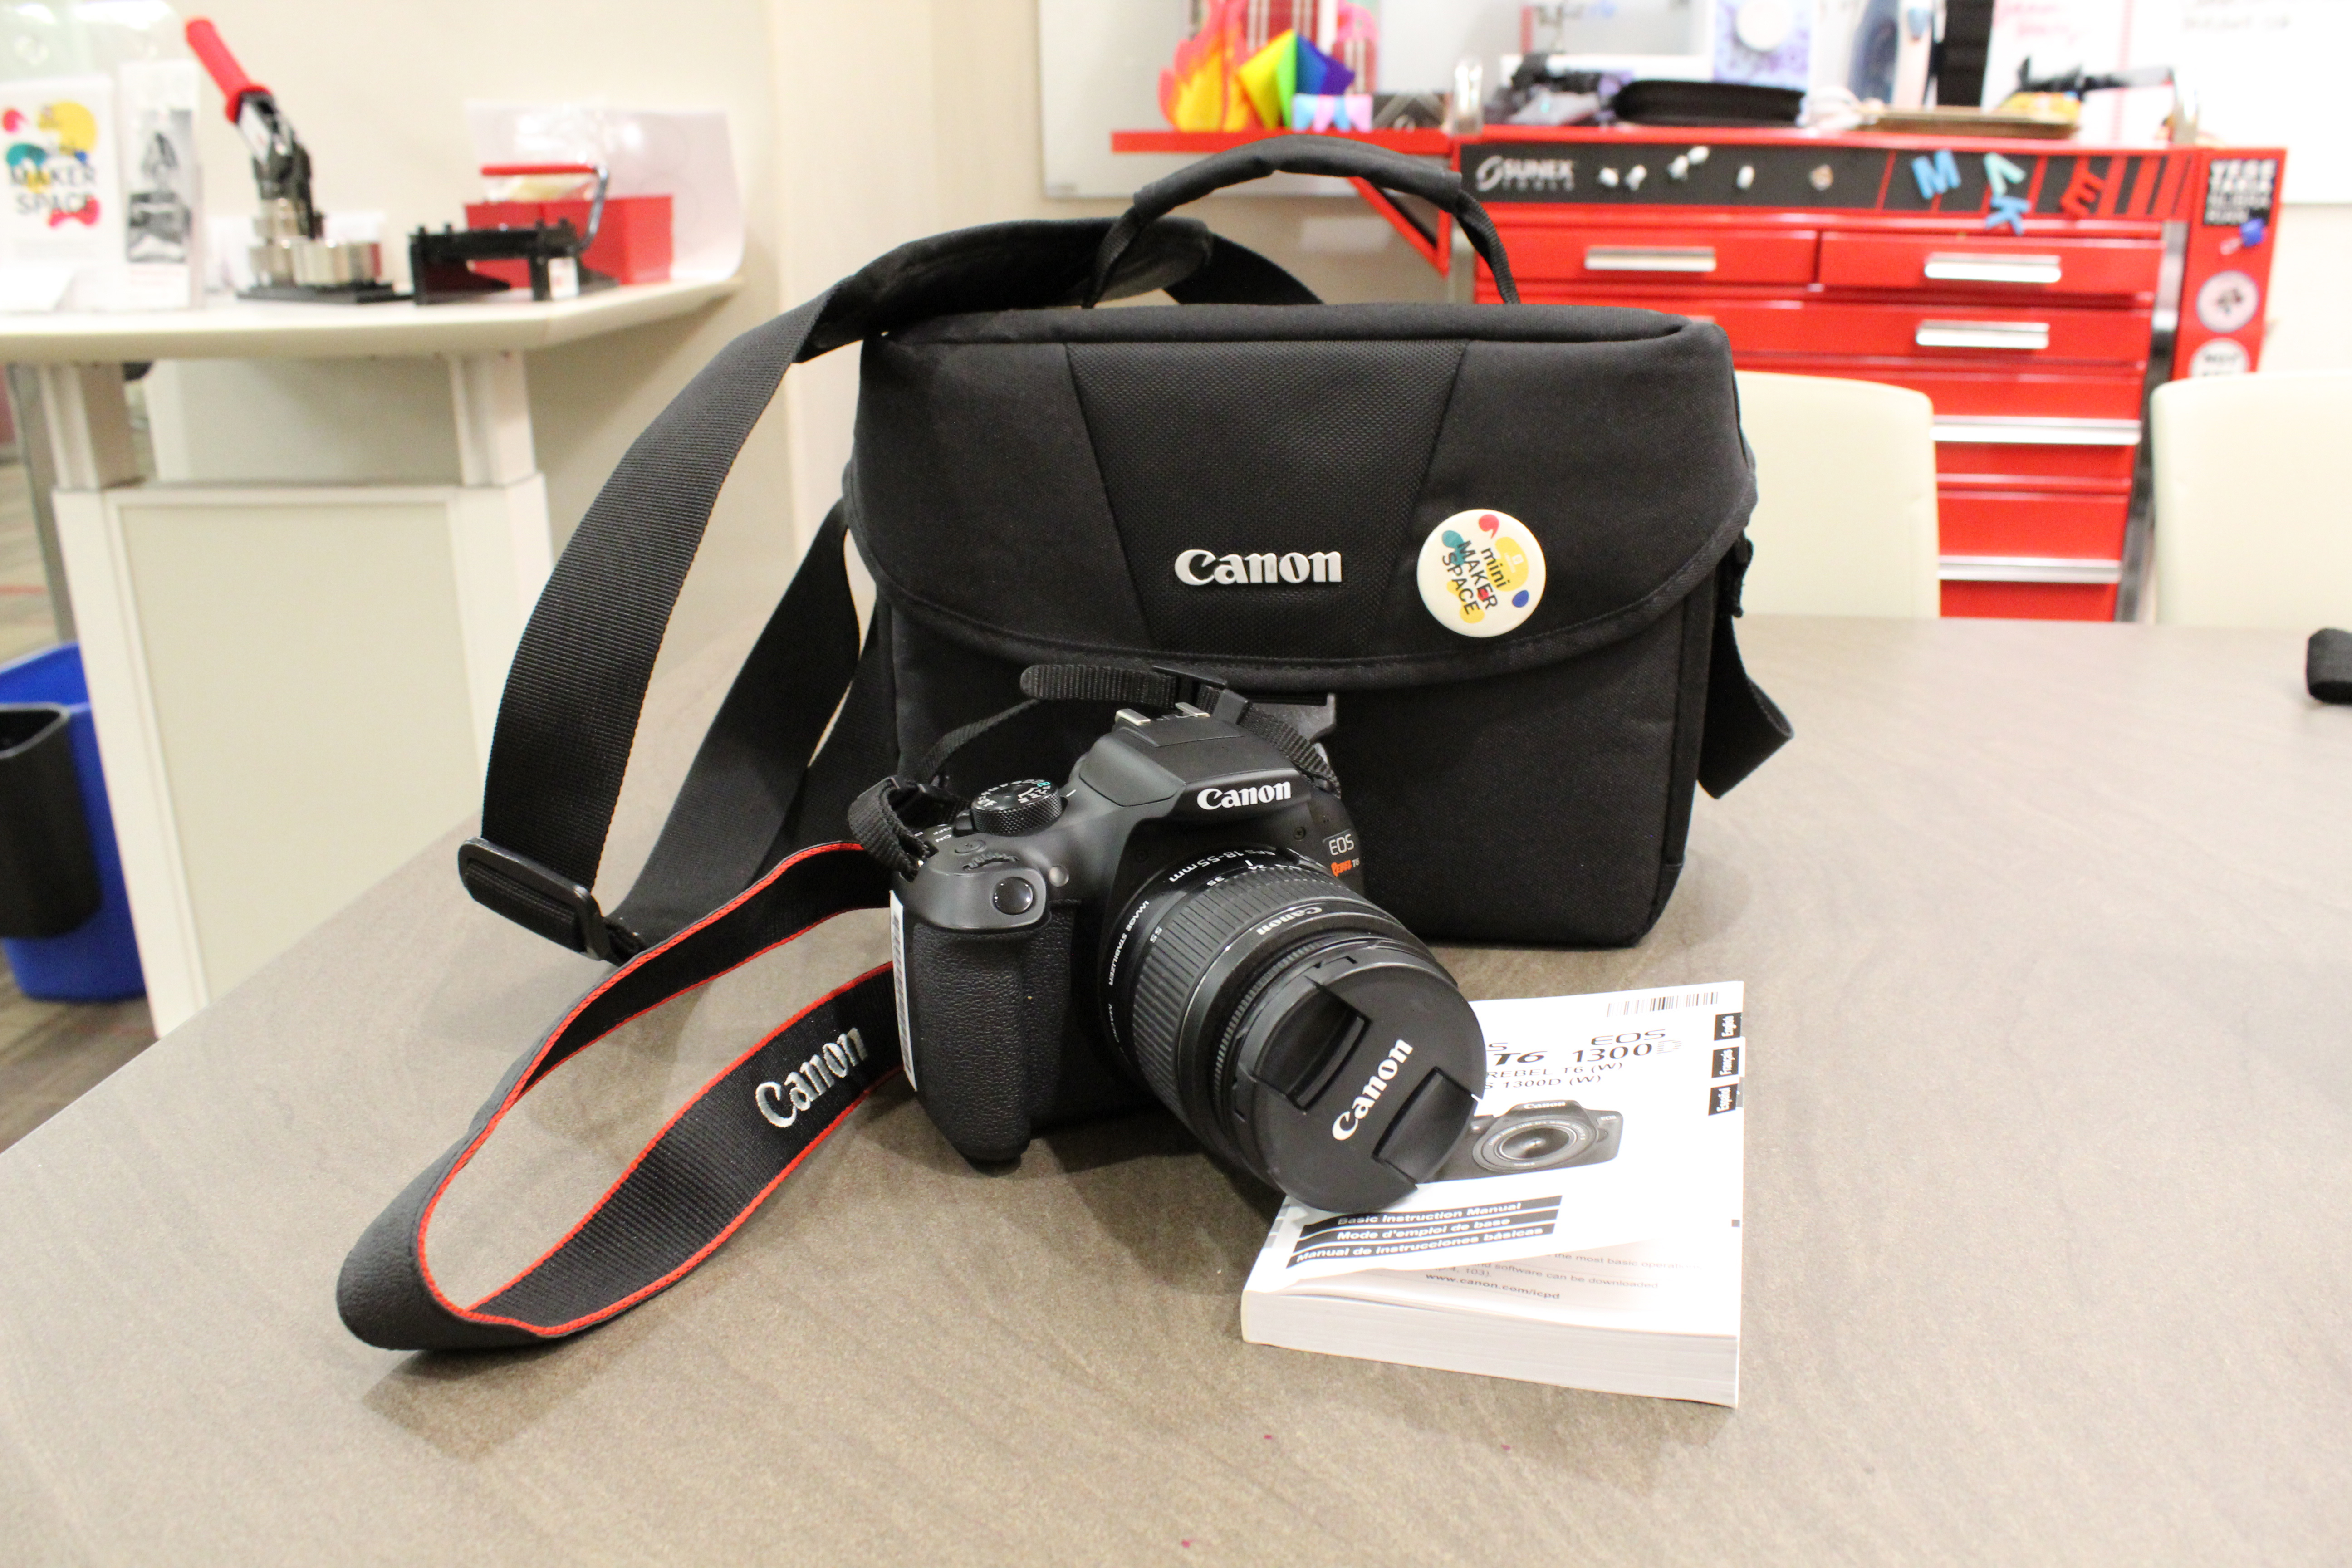 Canon digital camera.